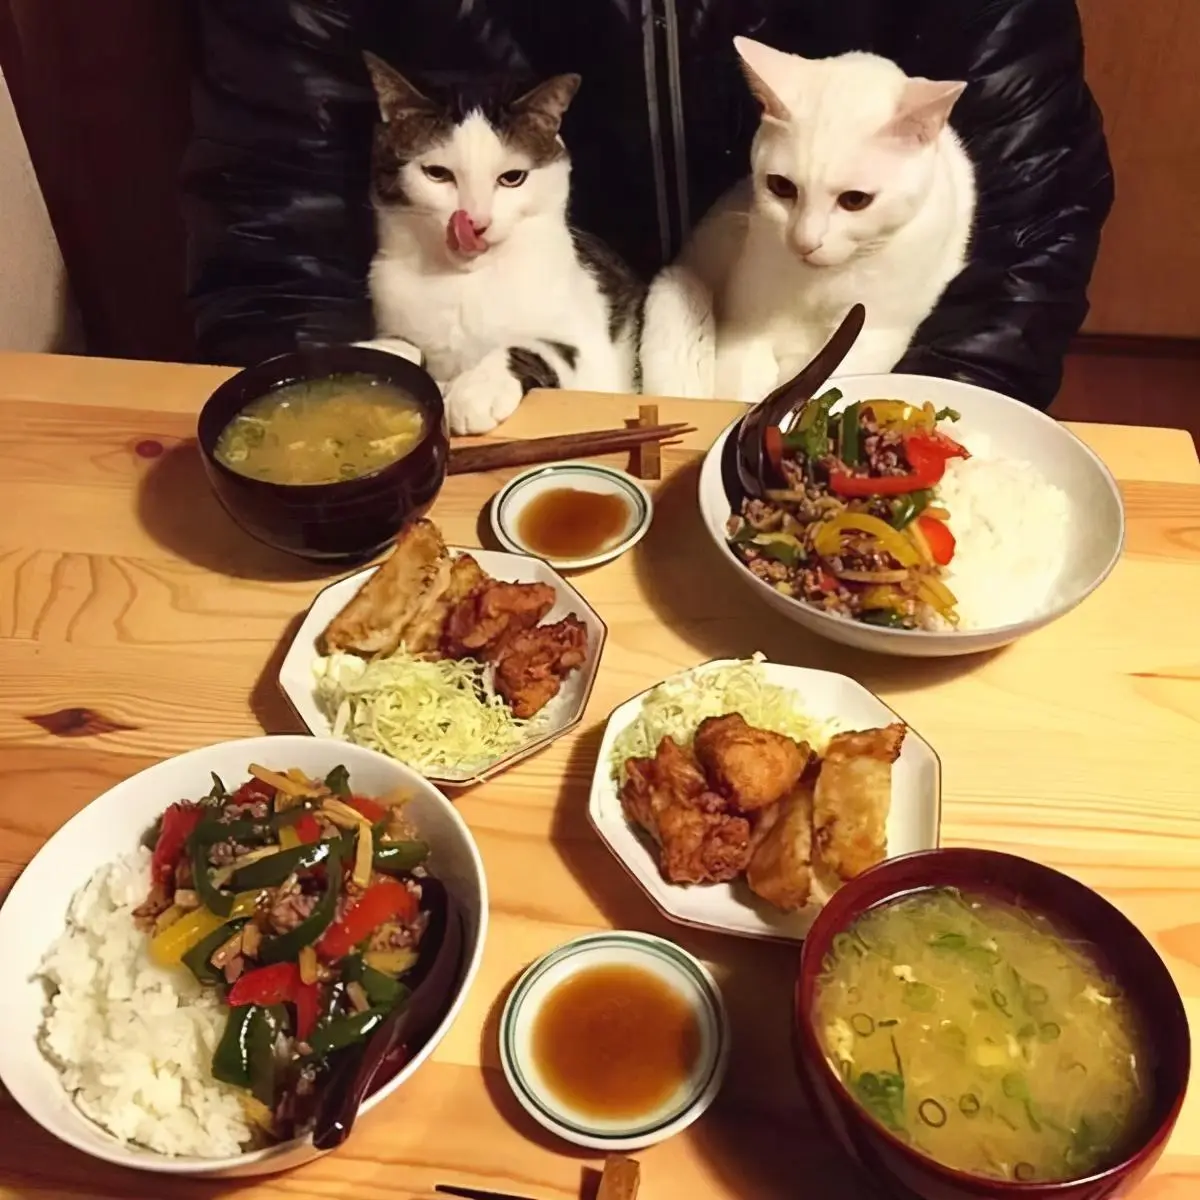 自从养猫之后，你们有好好地吃过一顿饭吗？也有一双眼睛一直盯着你吗？​